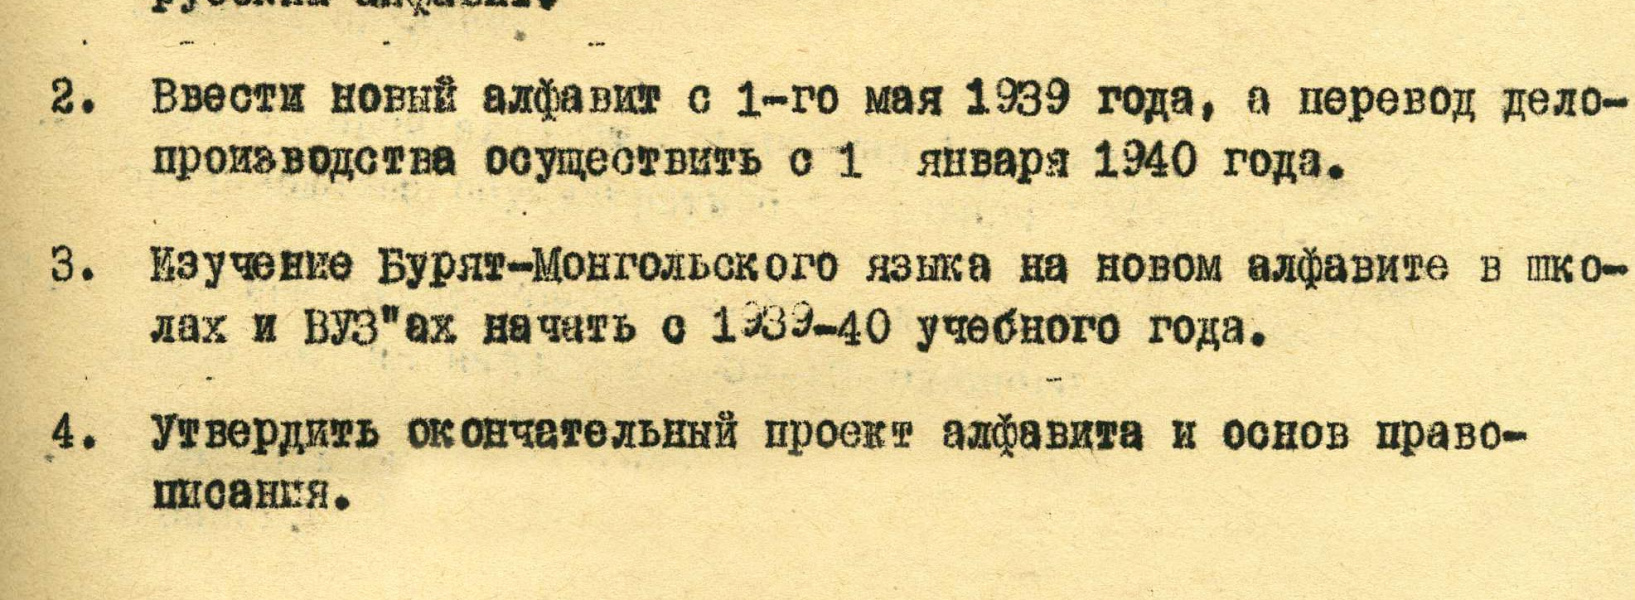 28 апреля 1939 г. 85 лет со дня выхода Указа Президиума Верховного Совета БМАССР о переводе бурятской письменности на русский алфавит